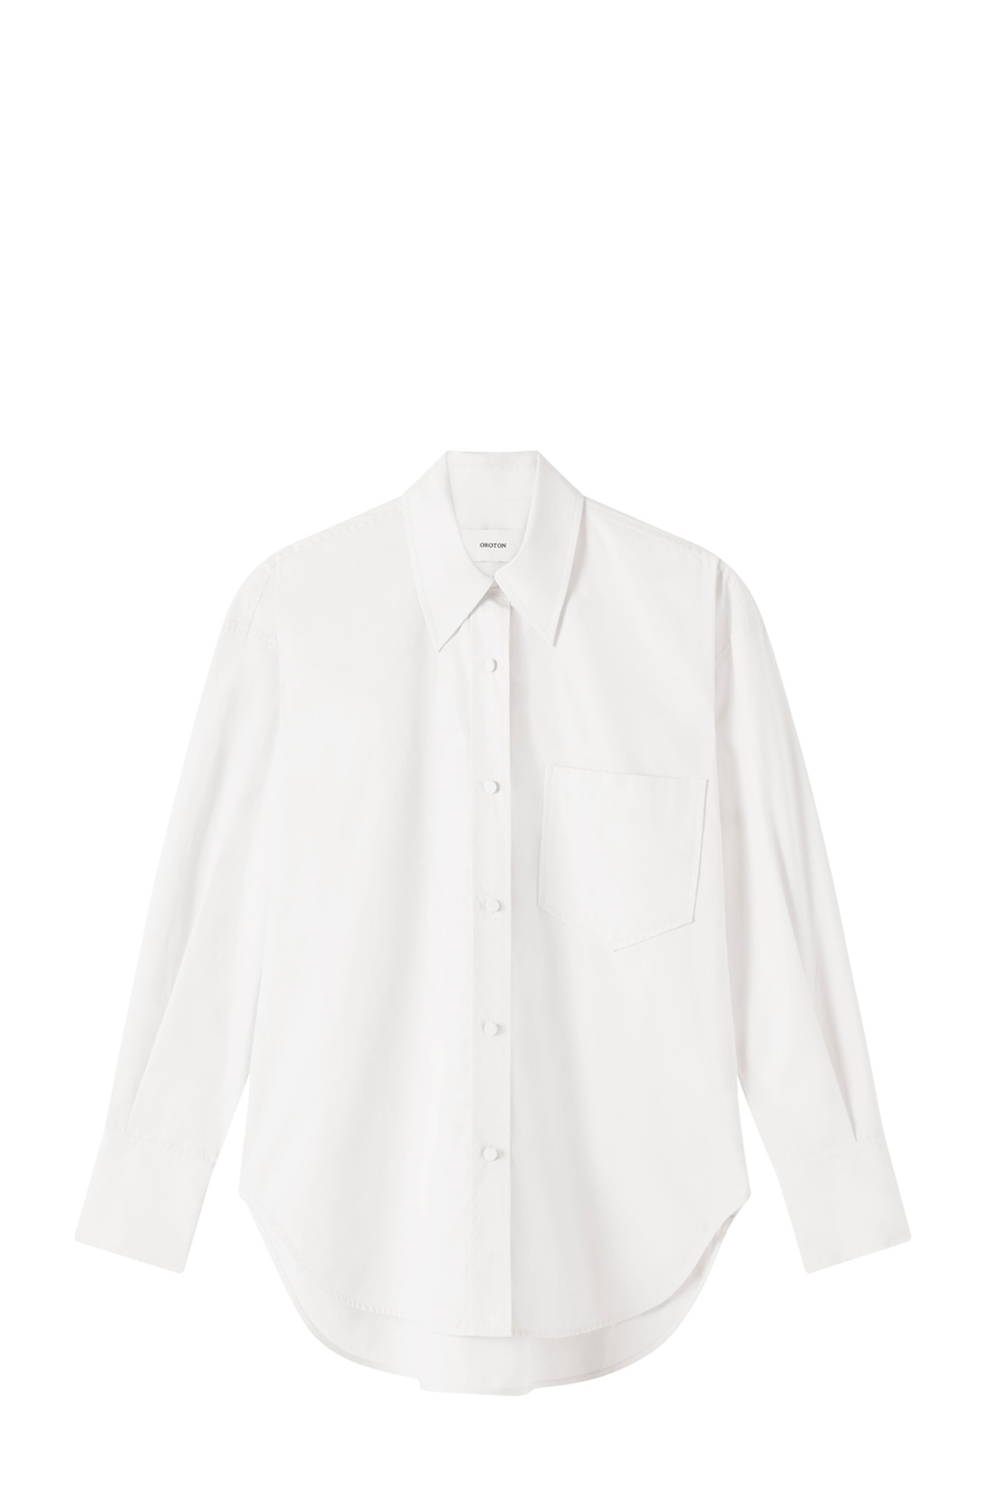 Oroton Cotton White Shirt